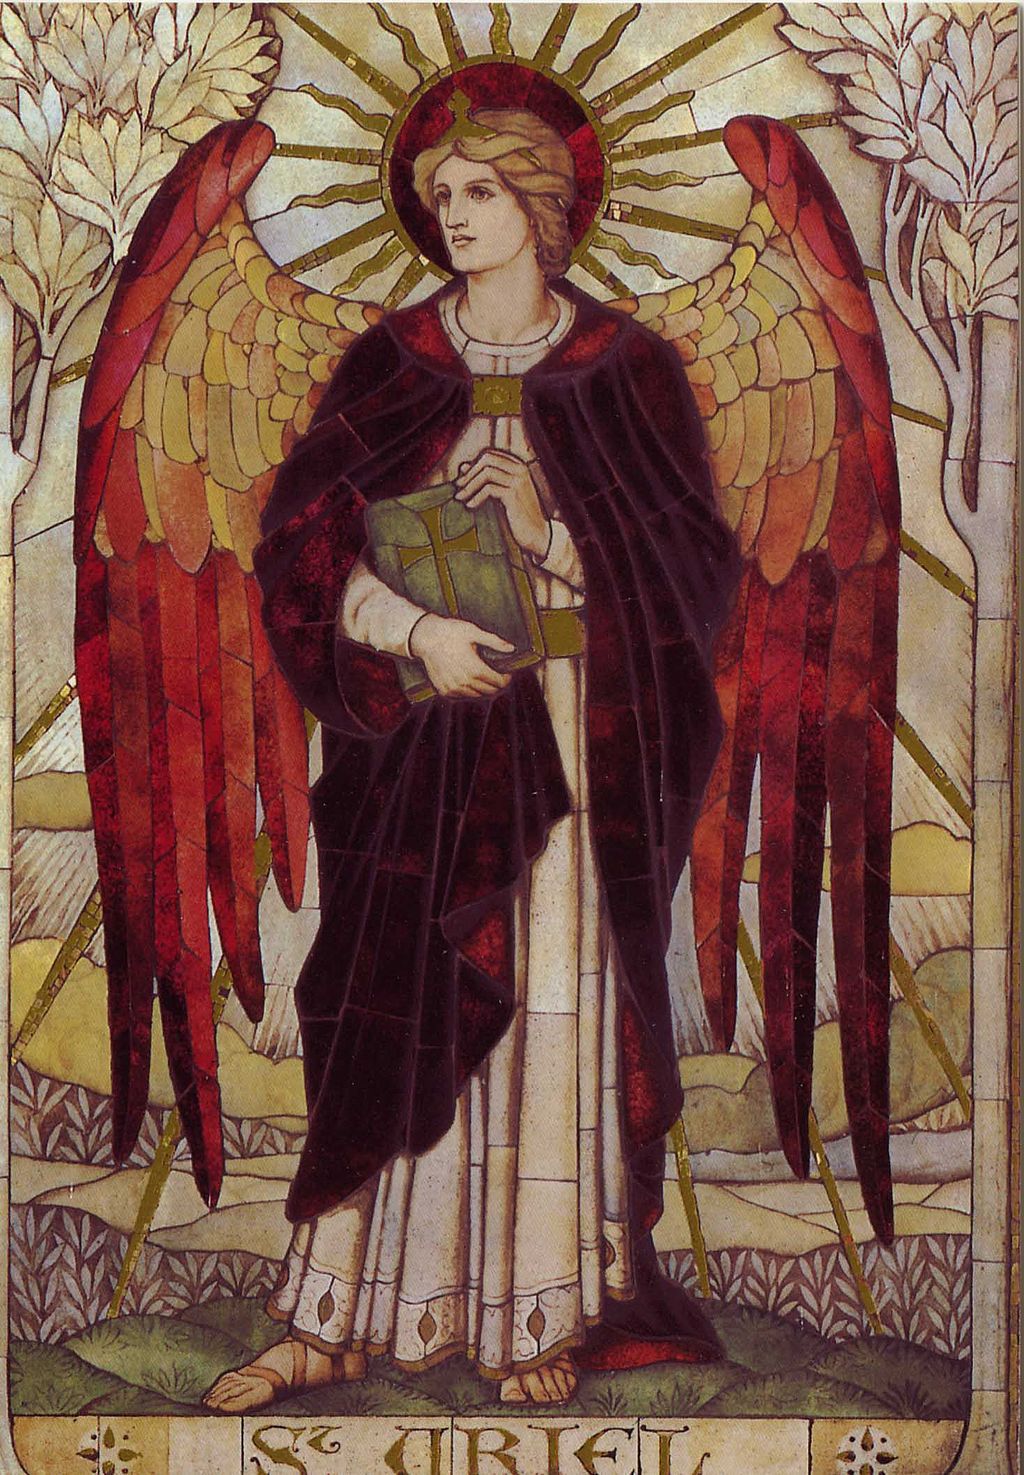 uriel arch angel messenger of god